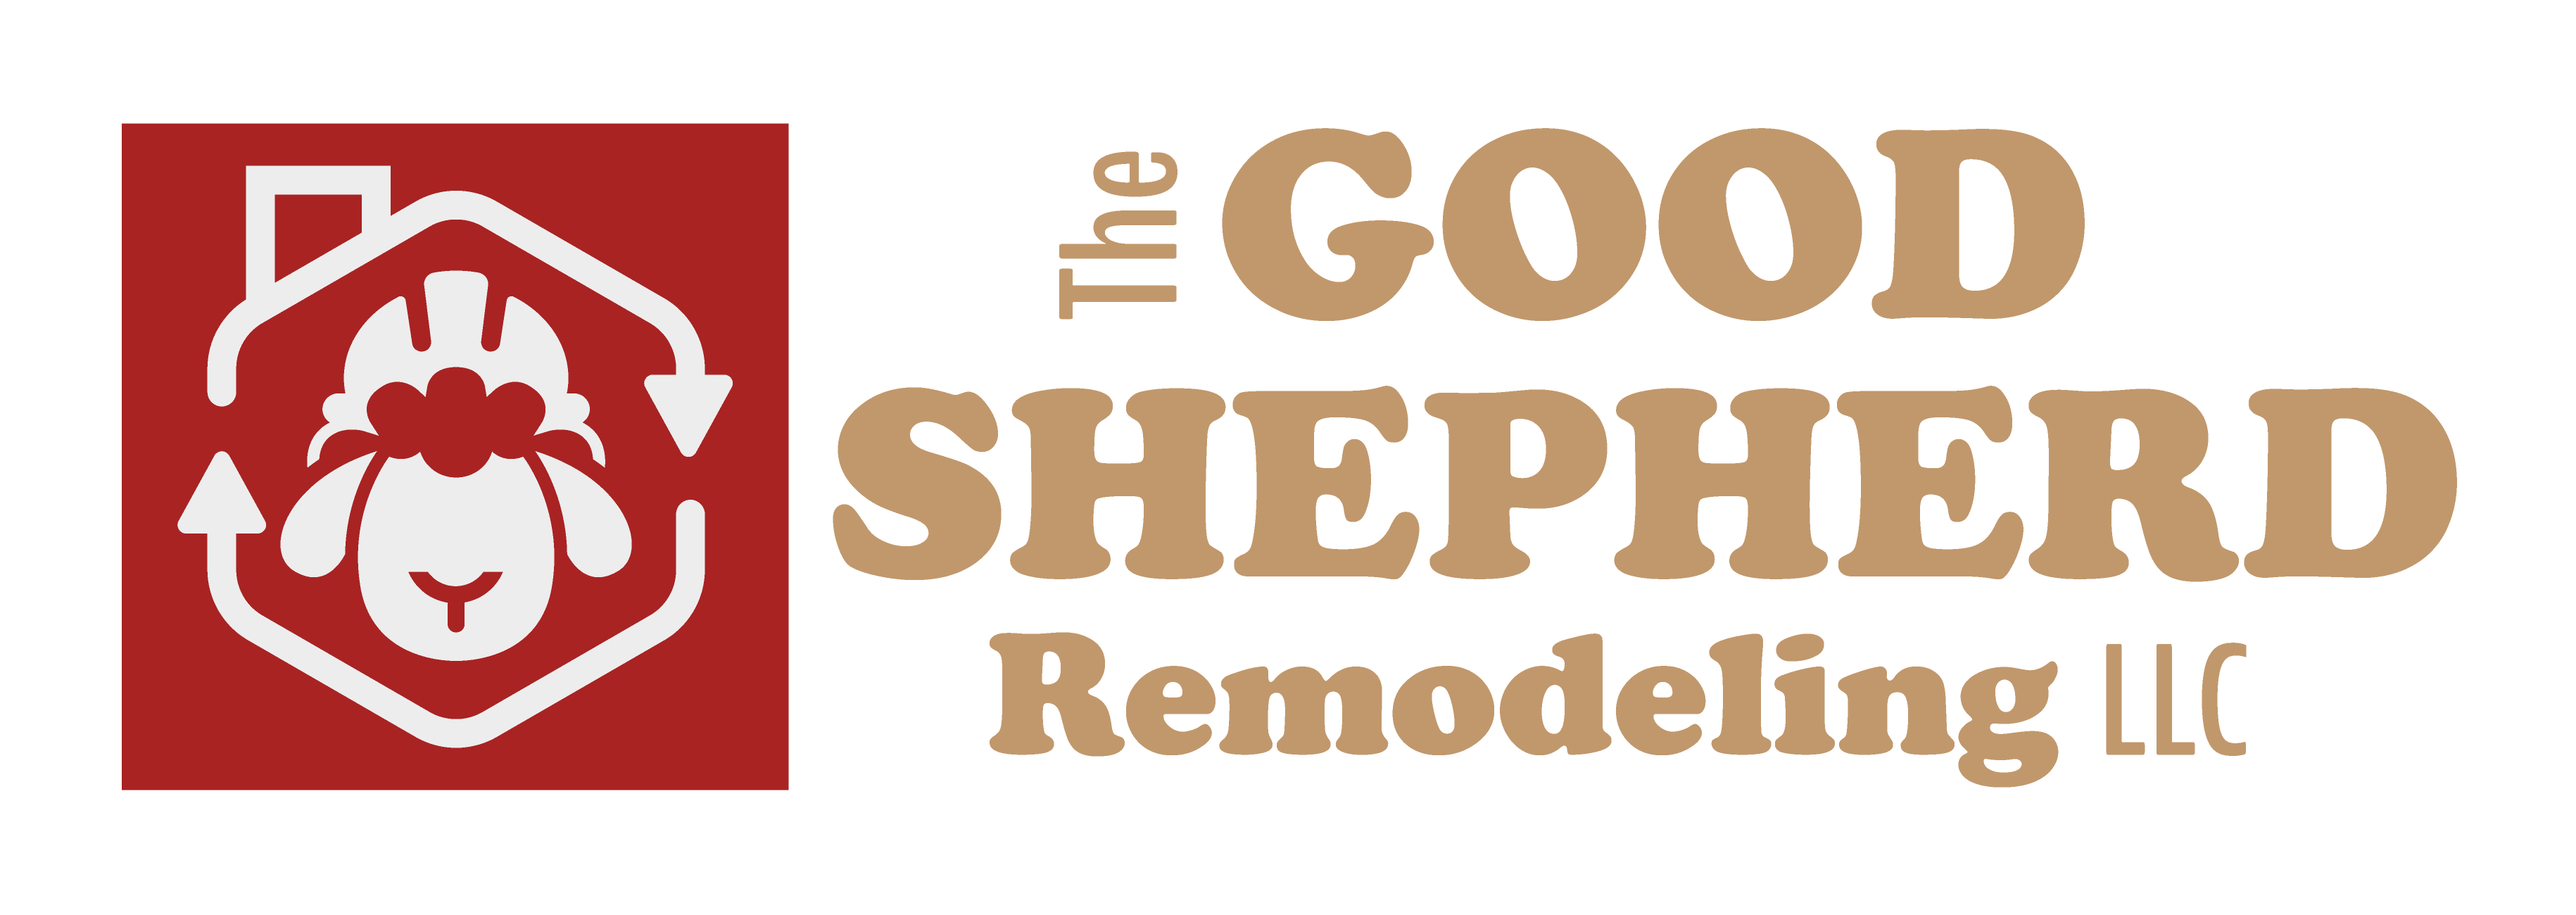 The Good Shepherd's Remodeling Logo